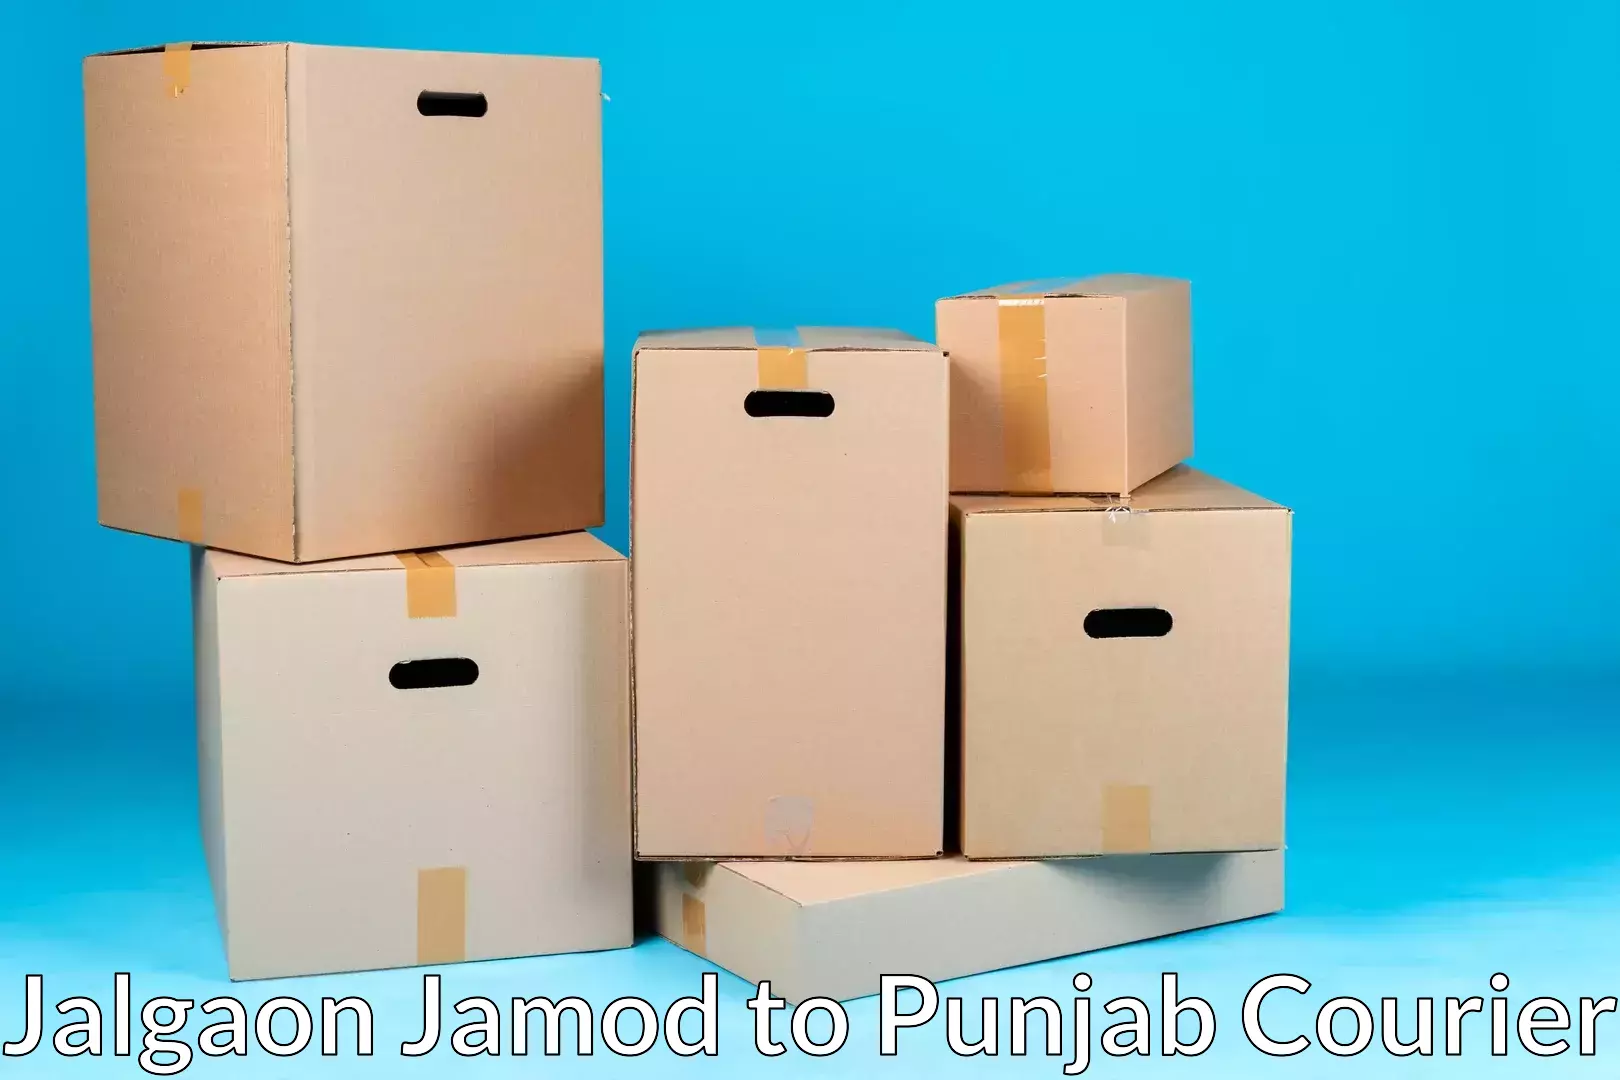 Professional moving company Jalgaon Jamod to Ajnala